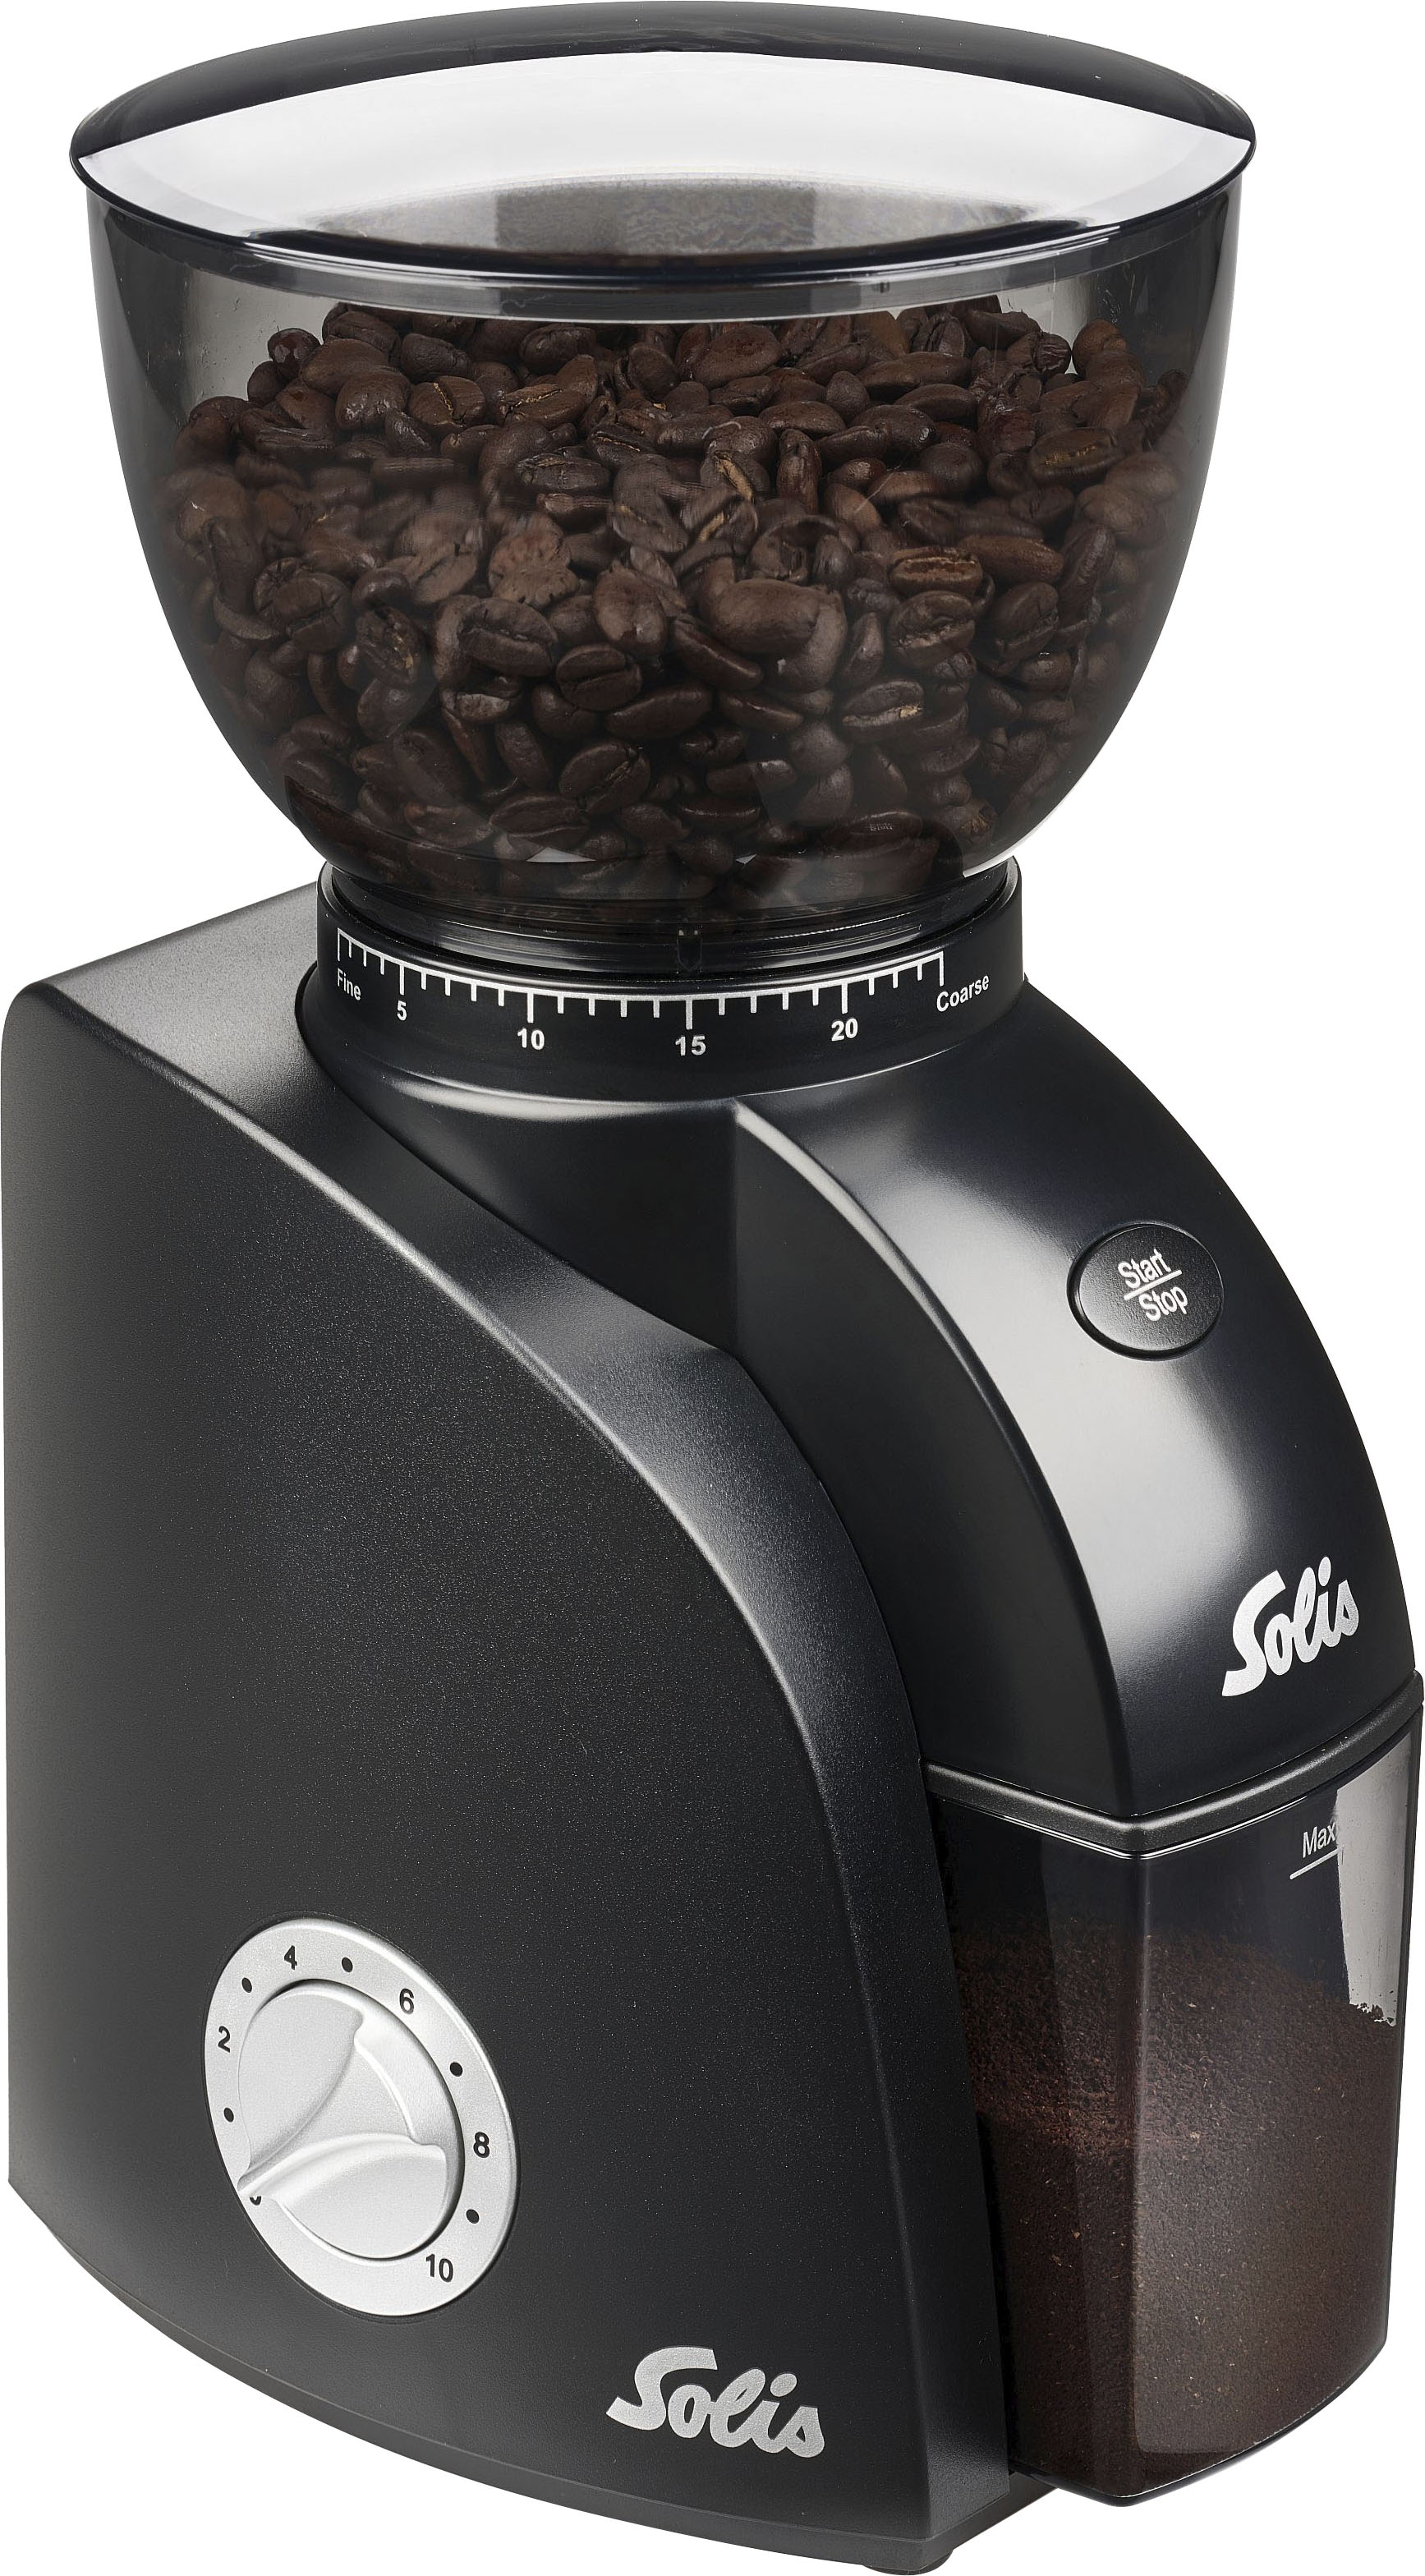 Solis Scala Plus Zero Static 1662 Mühle - 24 Mühlen, Zeitschaltuhr, Schutz gegen statischen Kaffee, Start-/Stopptaste, Kaffeebohnenbehälter 300 Gramm, leicht zu reinigen.